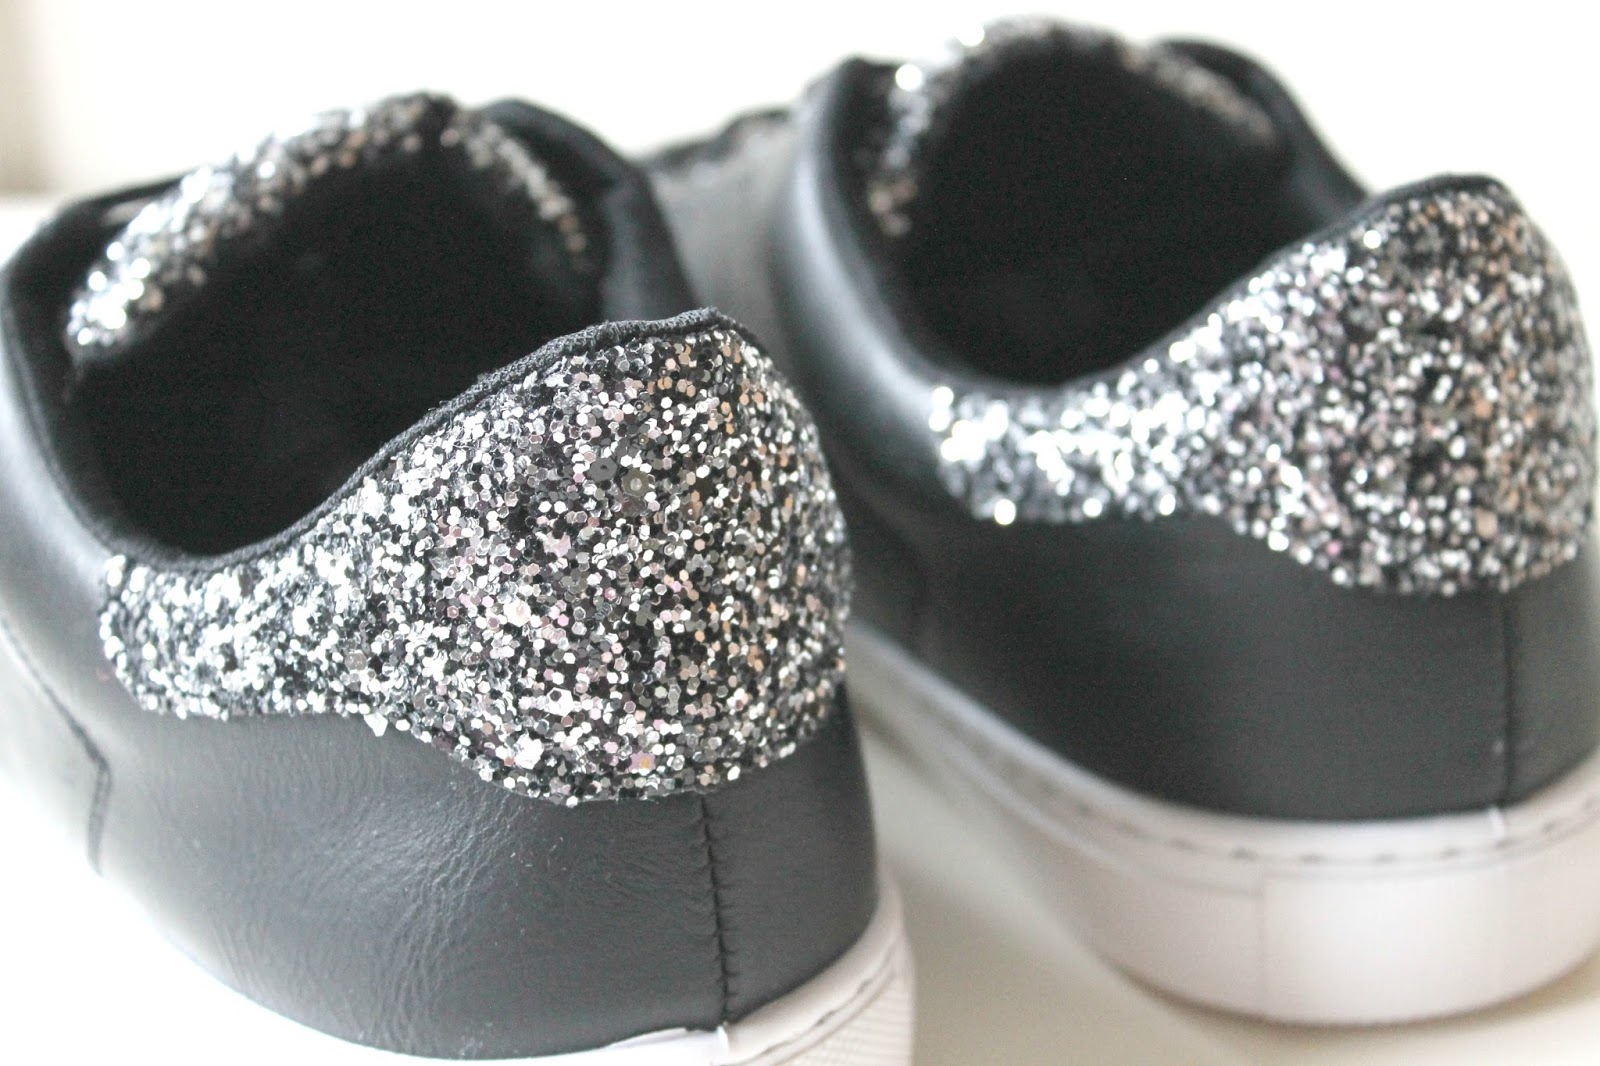 zwarte sneakers met zilveren glitters intro fashion store